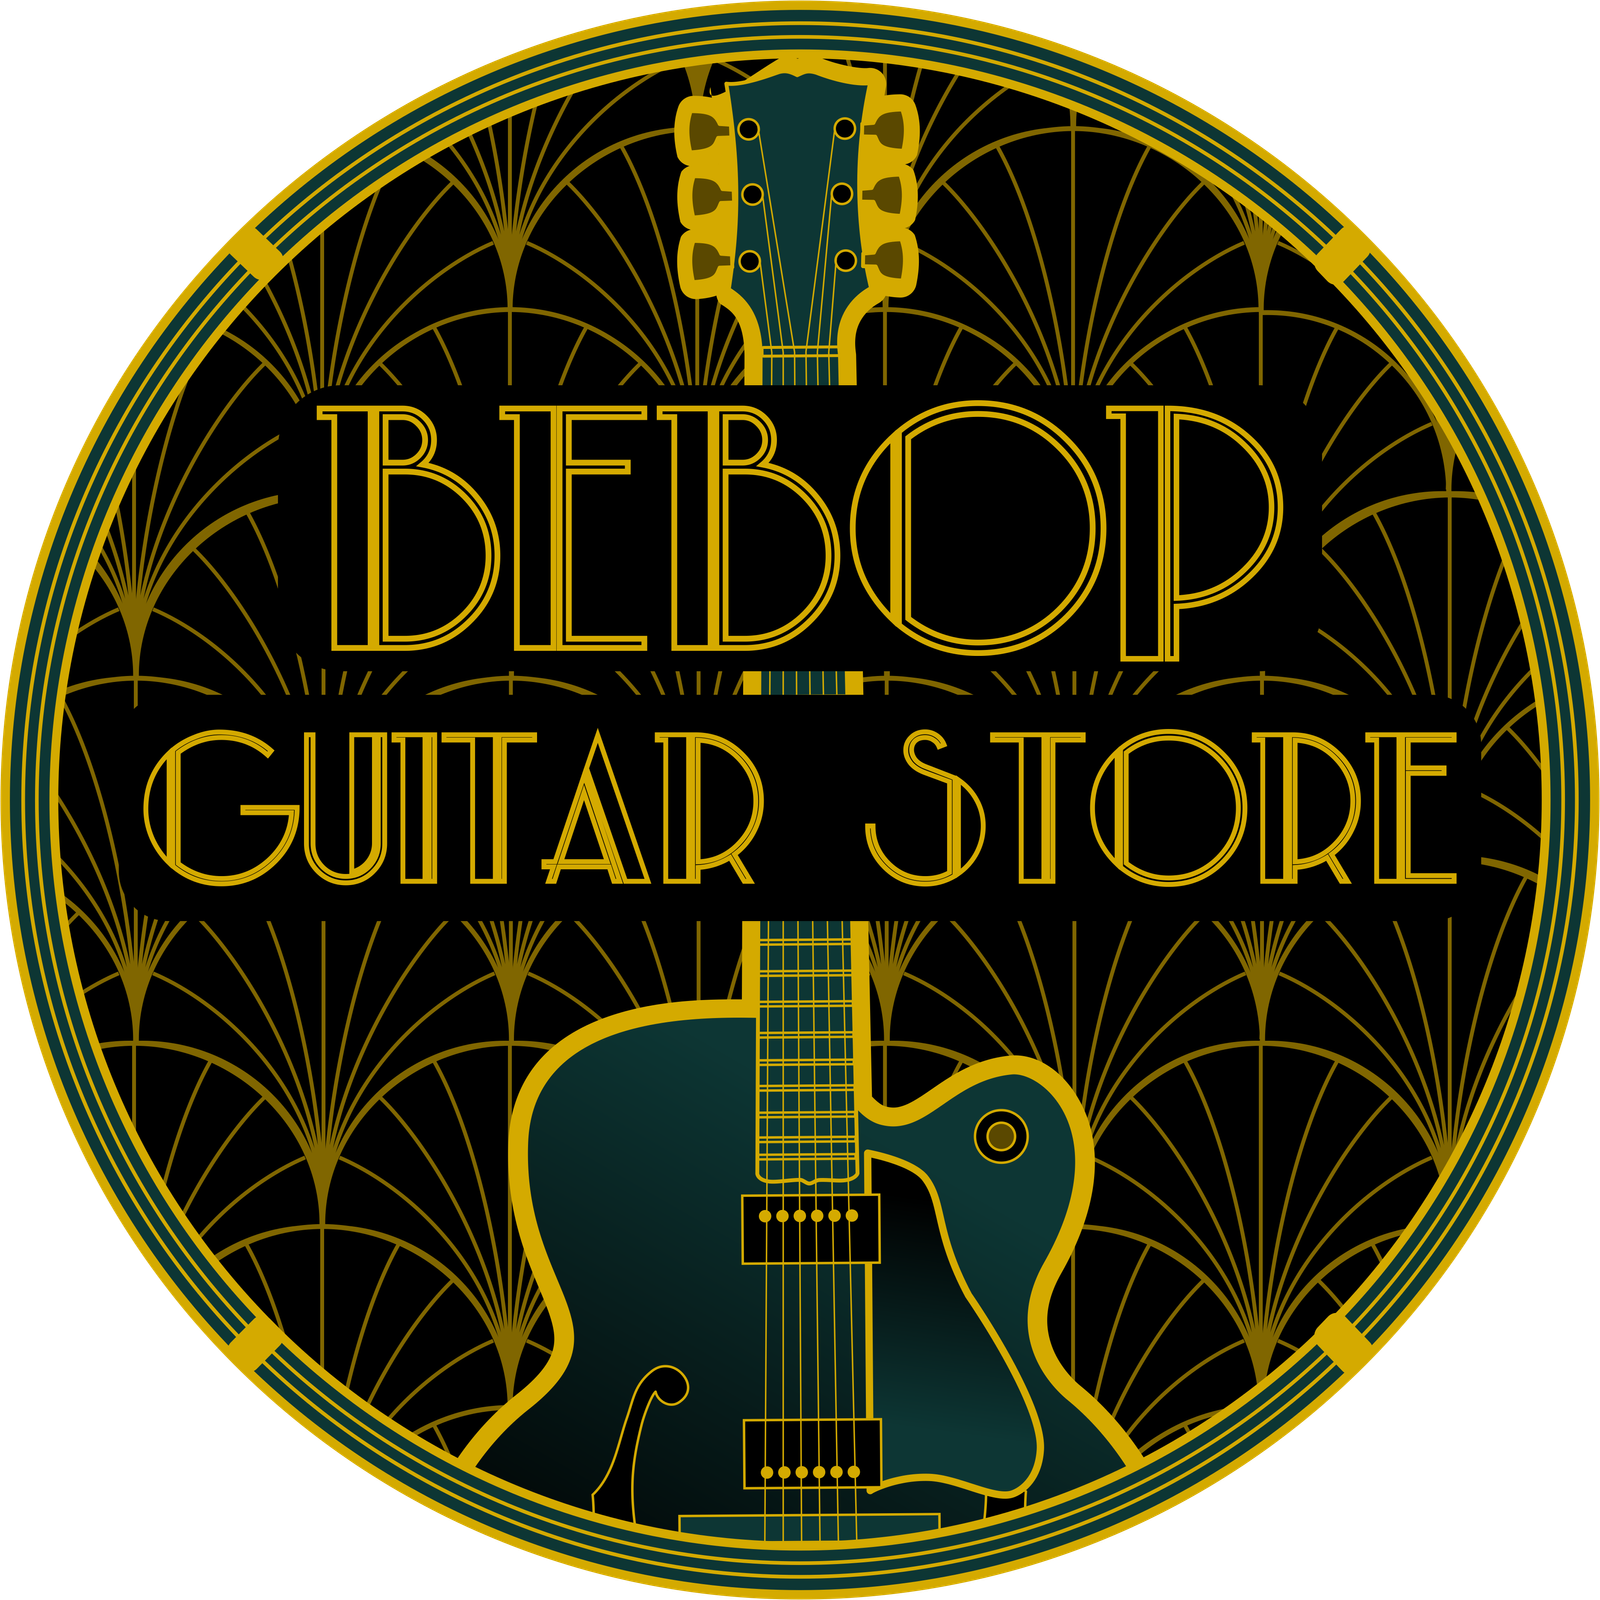 Bebop Guitar Store